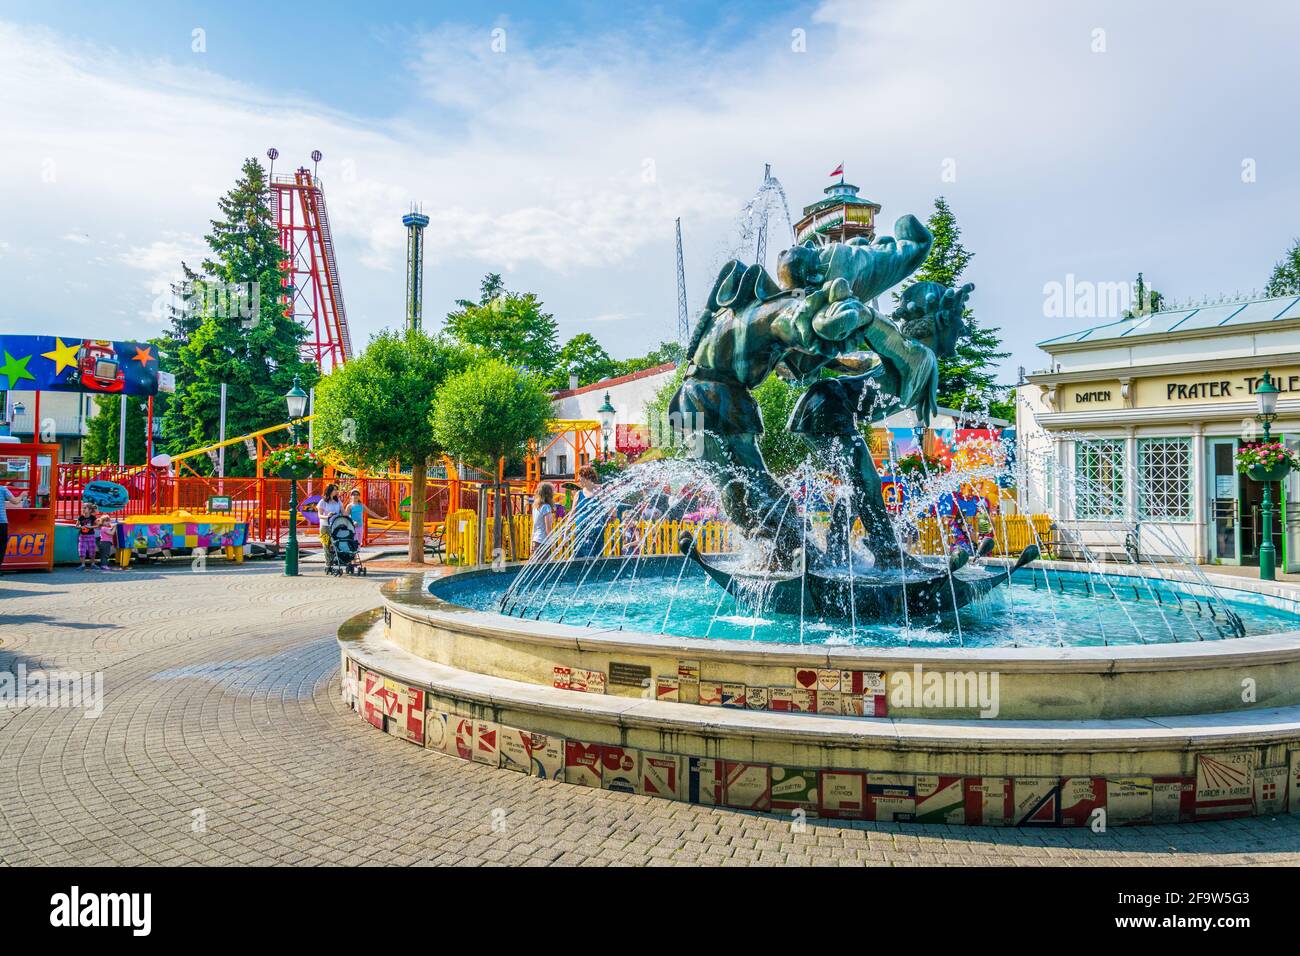 VIENNE, AUTRICHE, JUIN 2016:vue d'une fontaine clown devant le théâtre wurstel dans le parc d'attractions prater à Vienne, Autriche. Banque D'Images